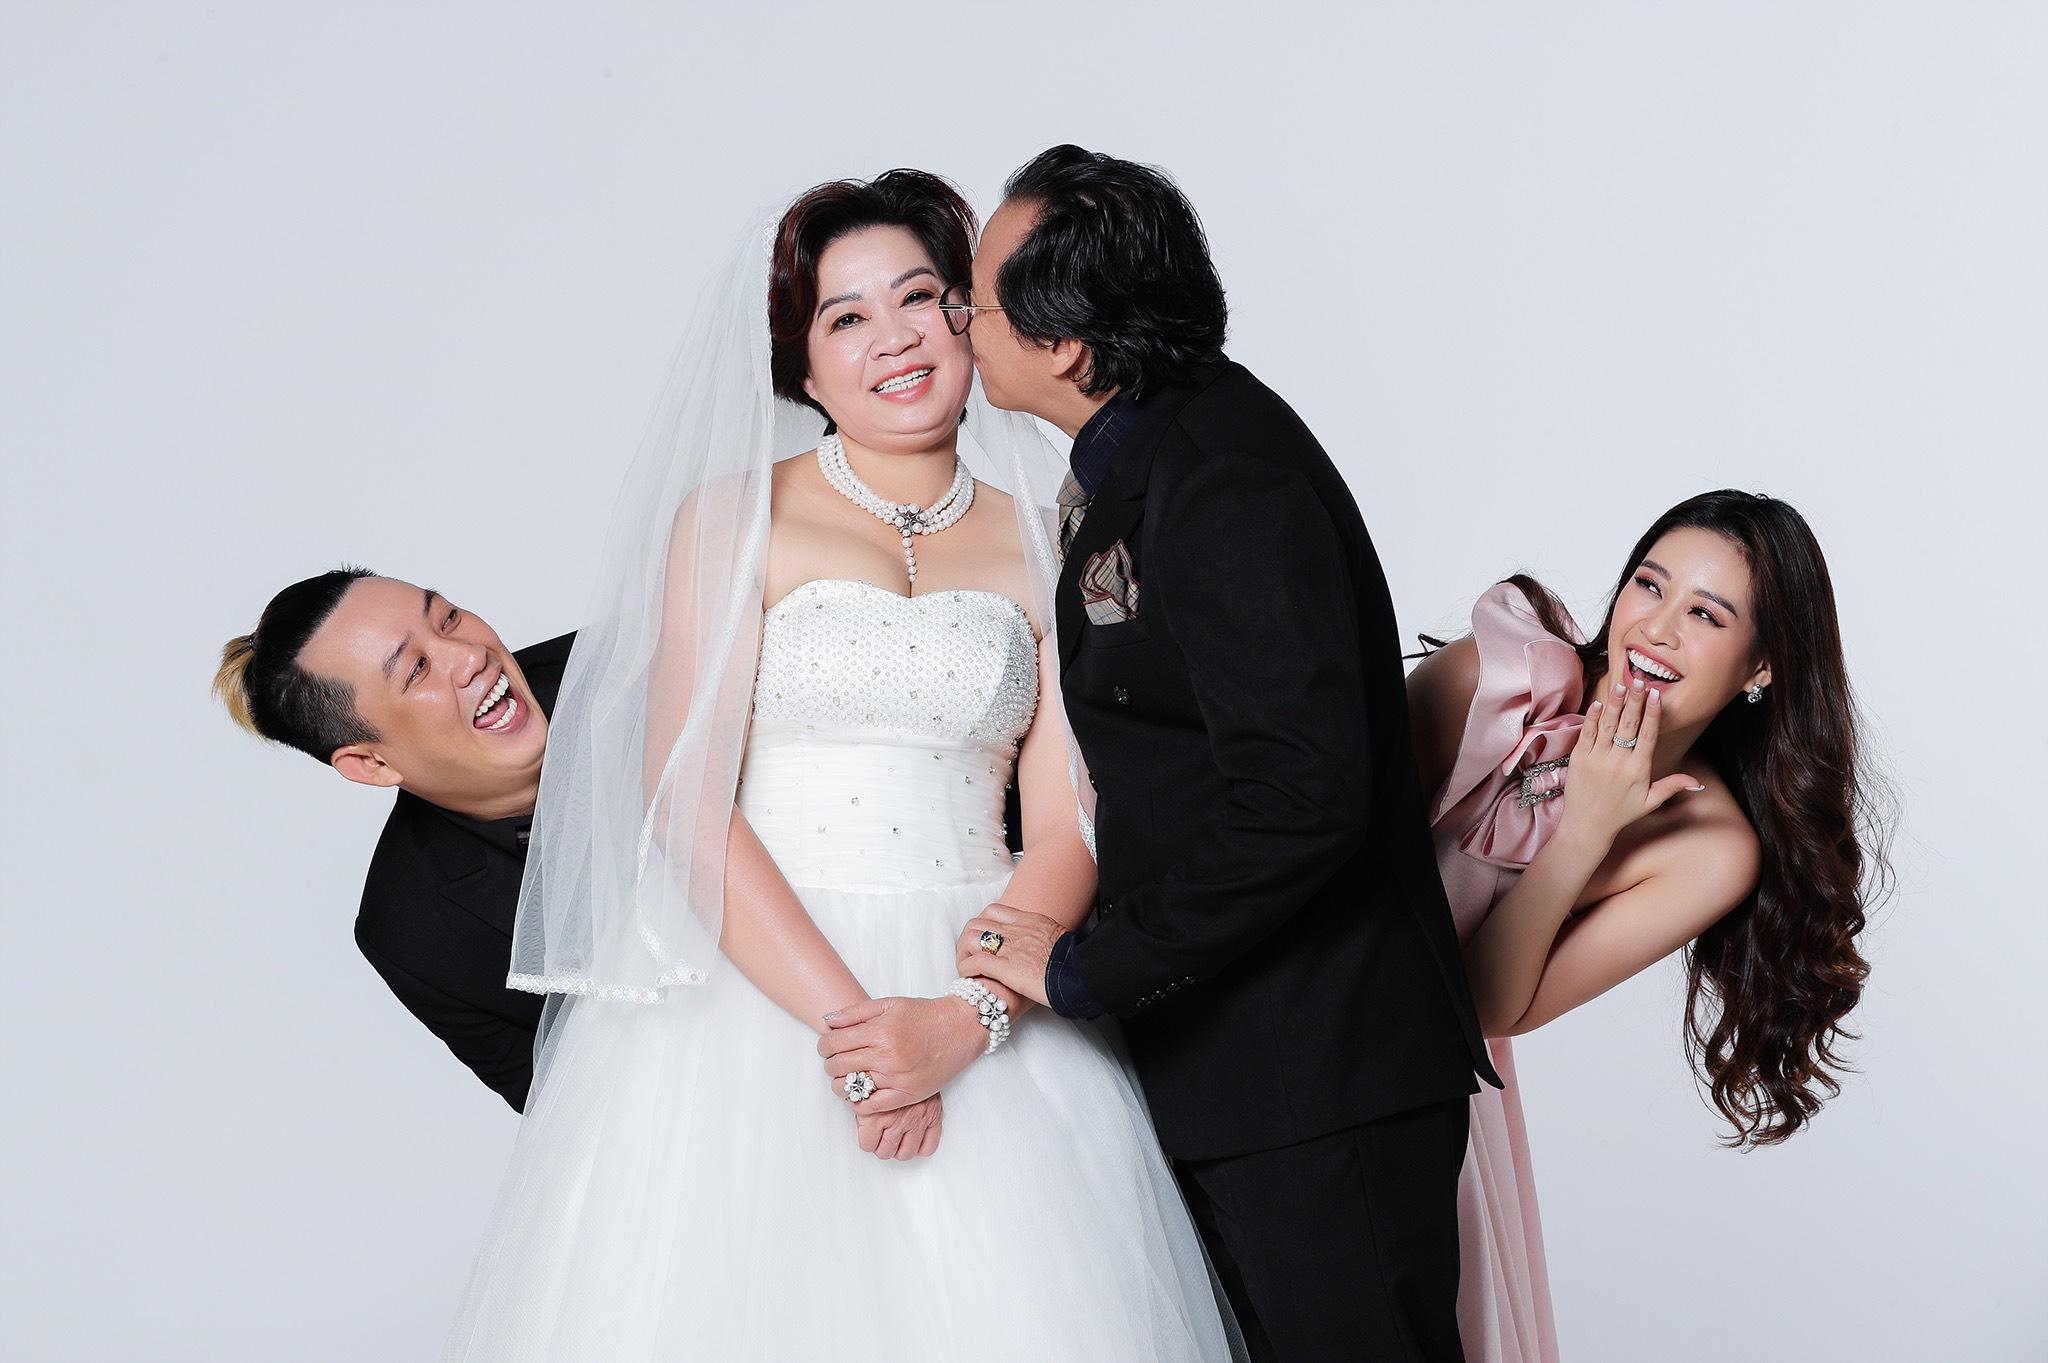 Hoa hậu Khánh Vân tiết lộ về gia đình trong bộ ảnh đặc biệt